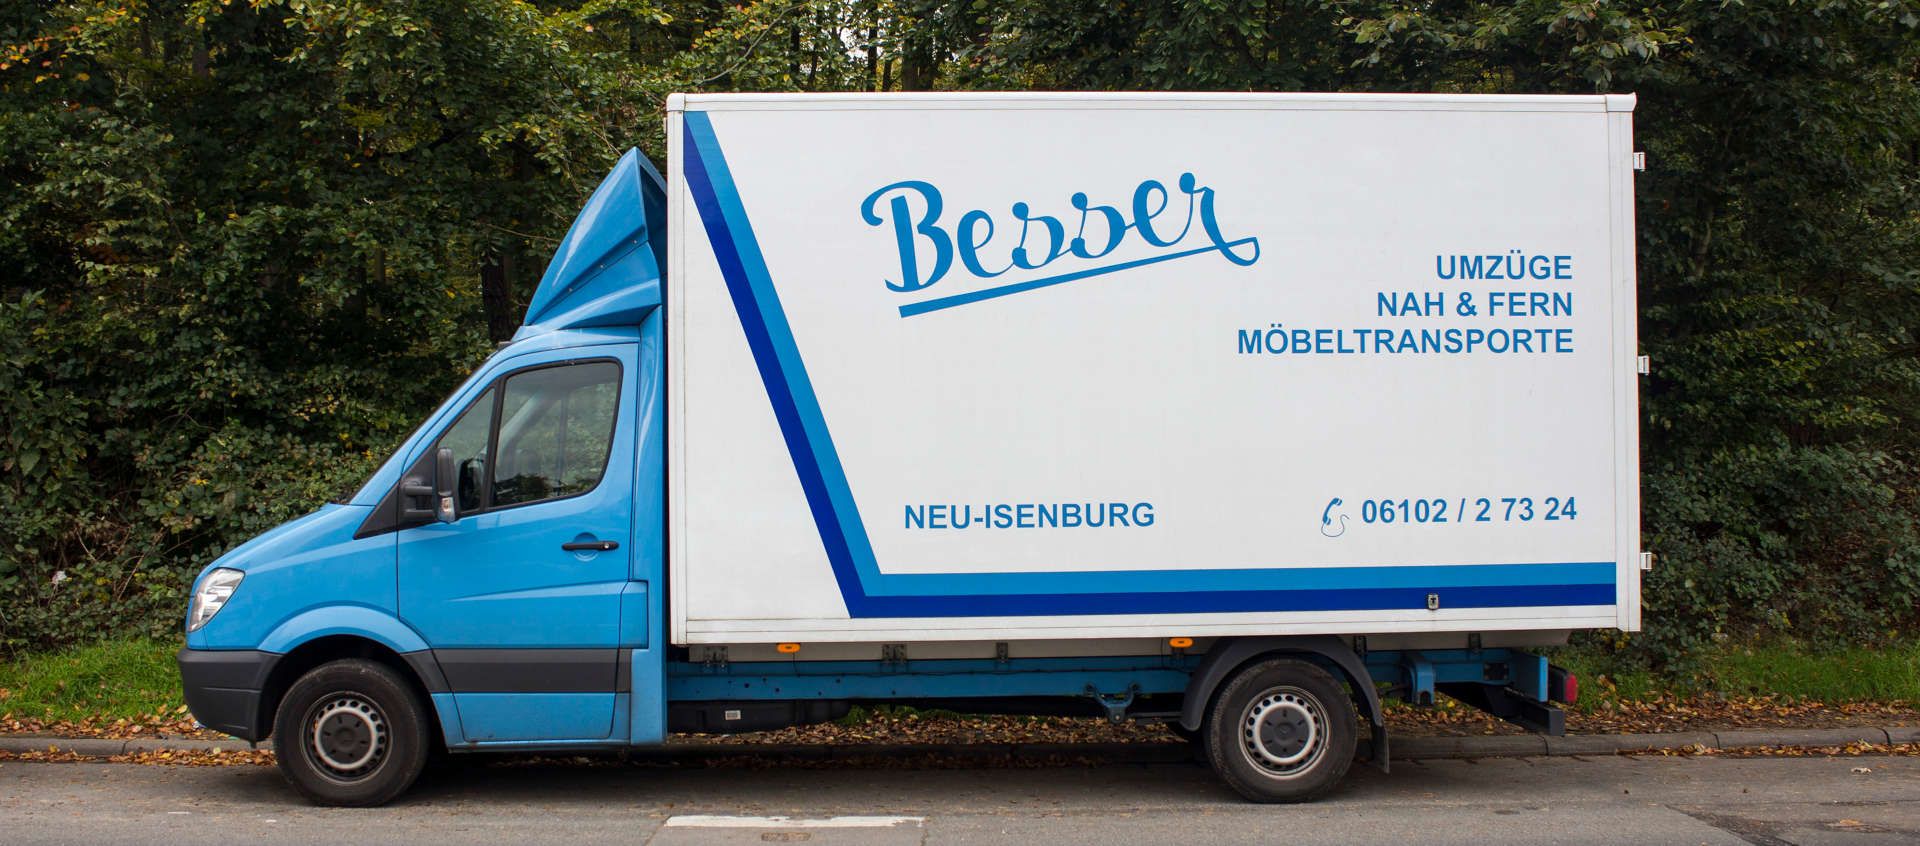 Bilder Besser - Umzüge GmbH